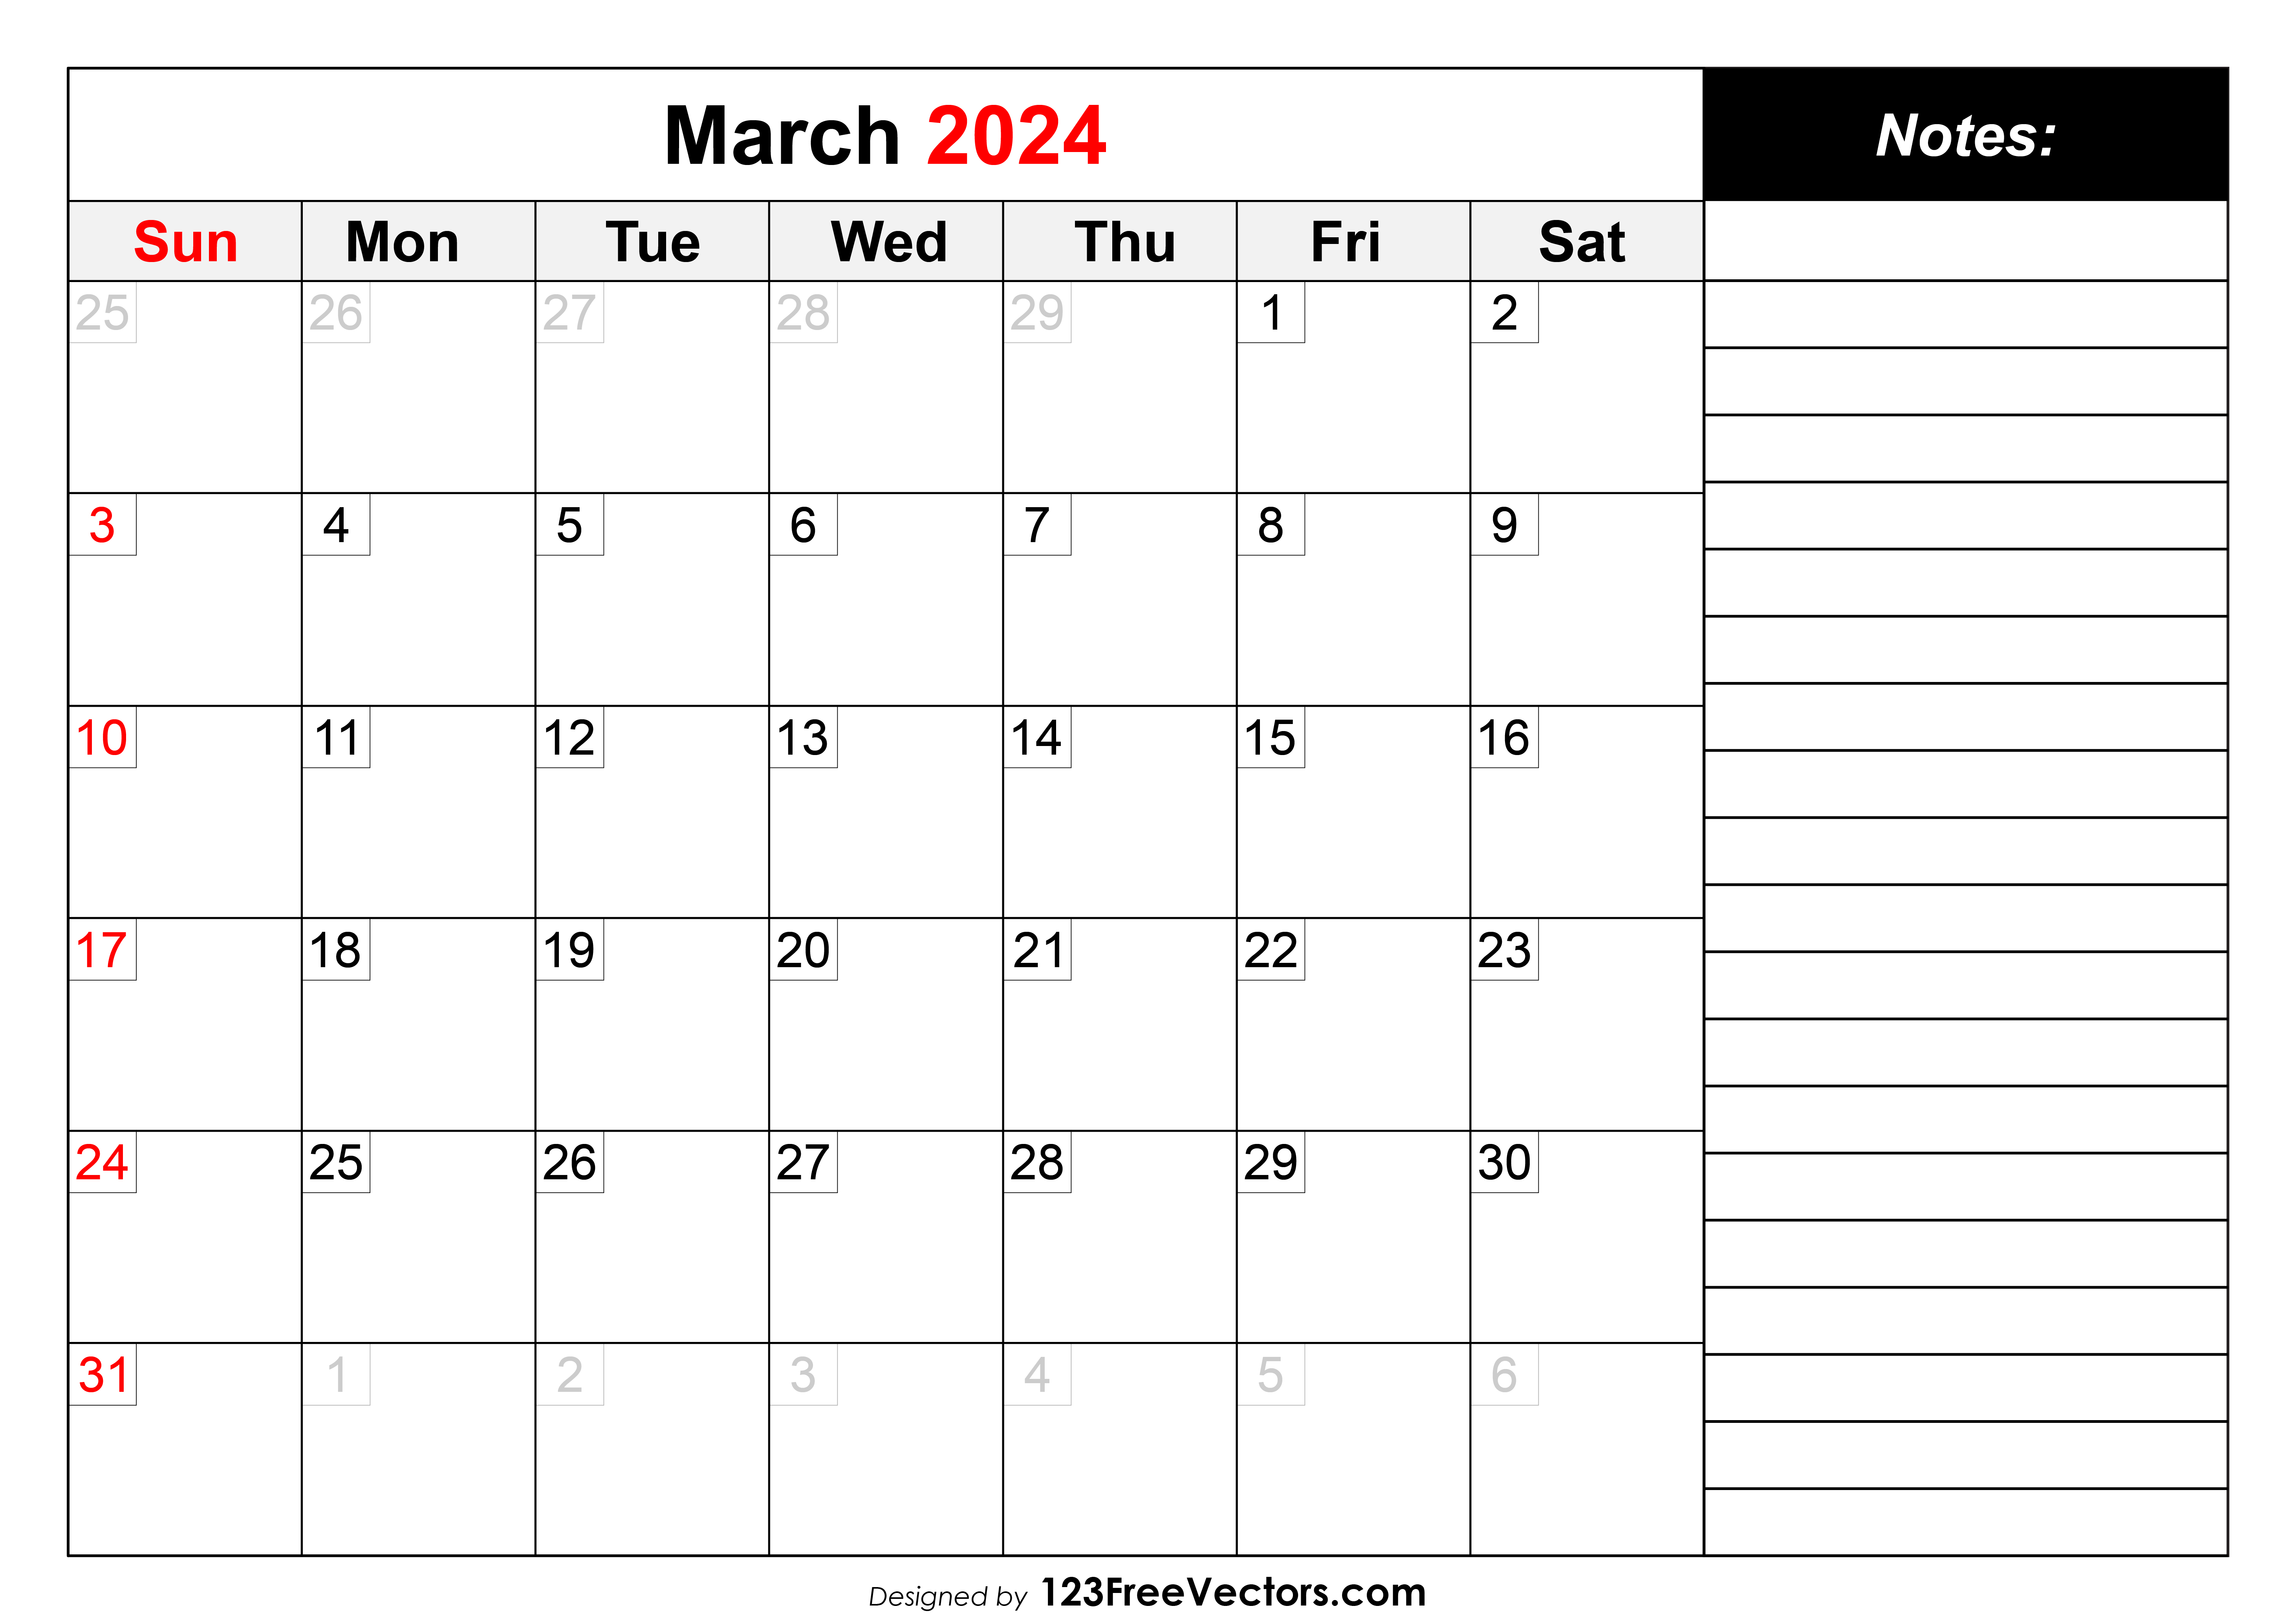 Free March 2024 Calendar